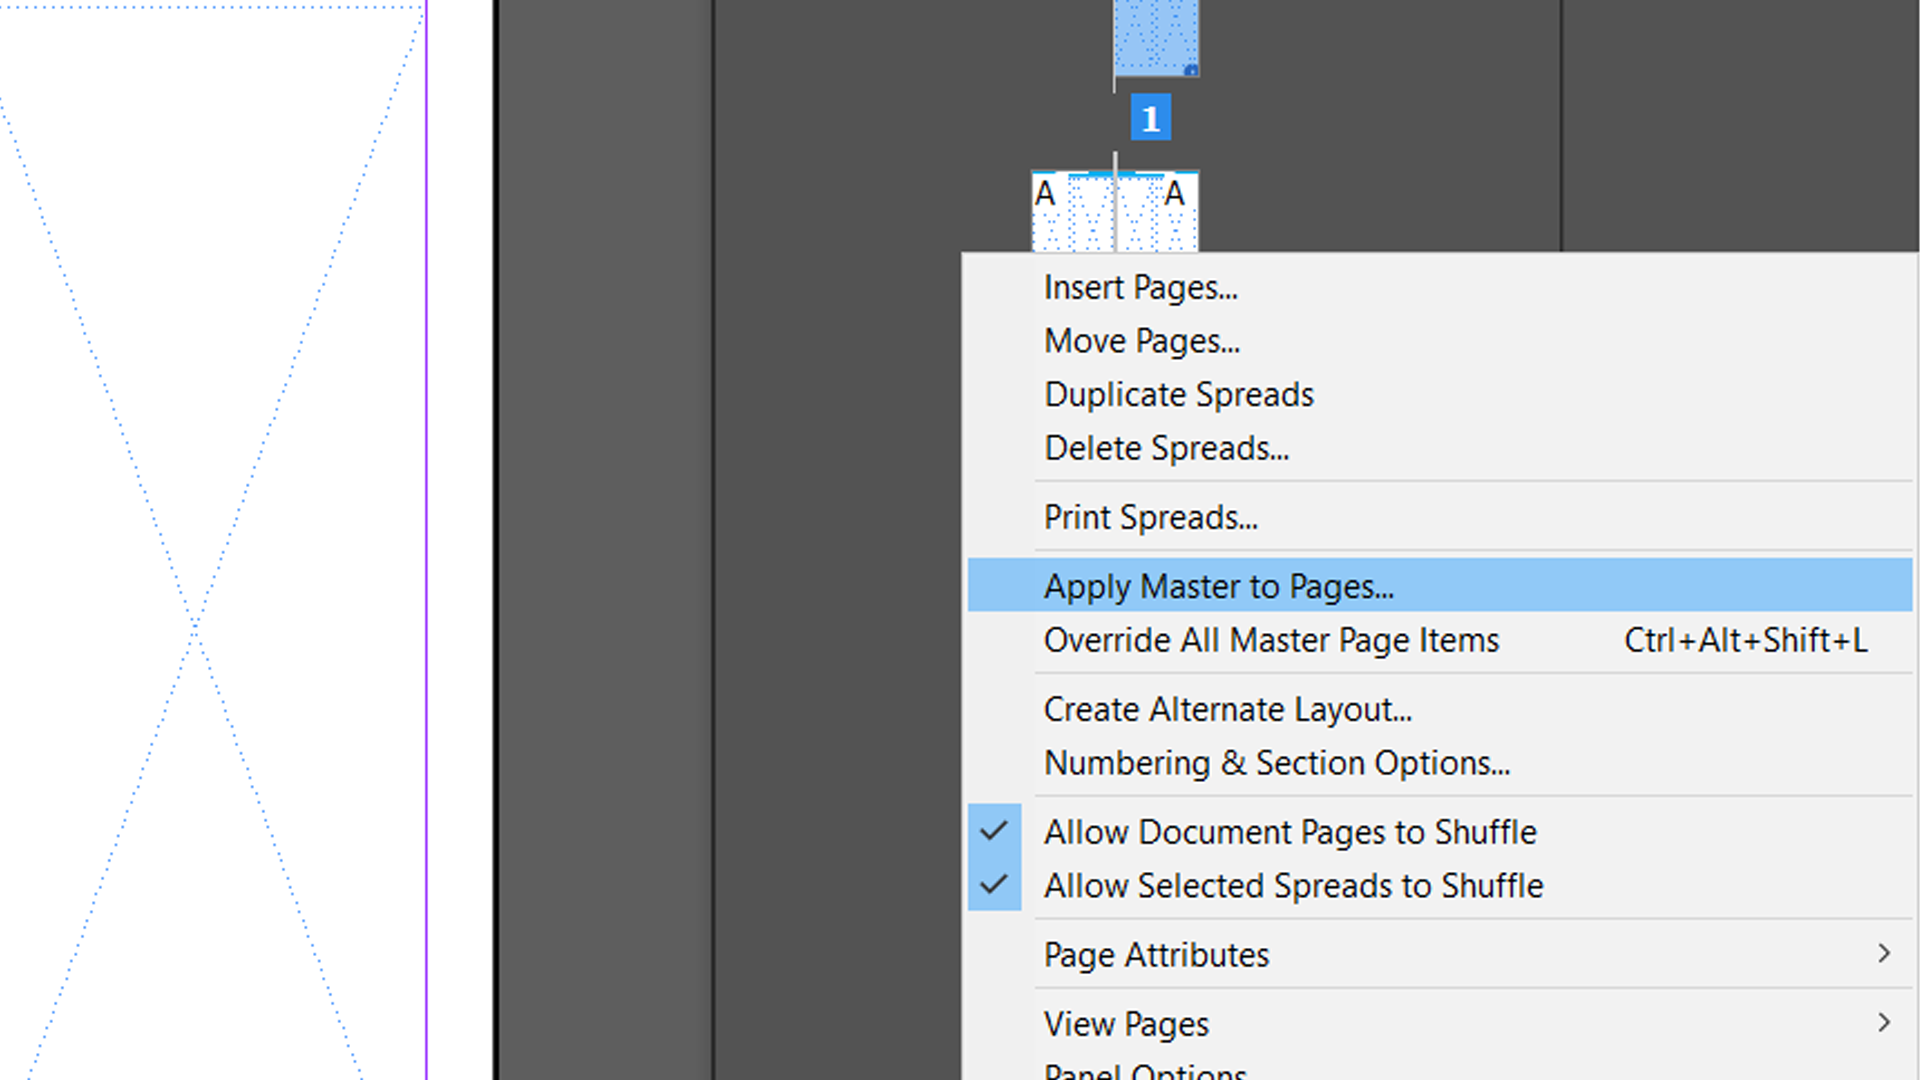 apply master right click menu - Come utilizzare le pagine master di Adobe InDesign per semplificare il flusso di lavoro